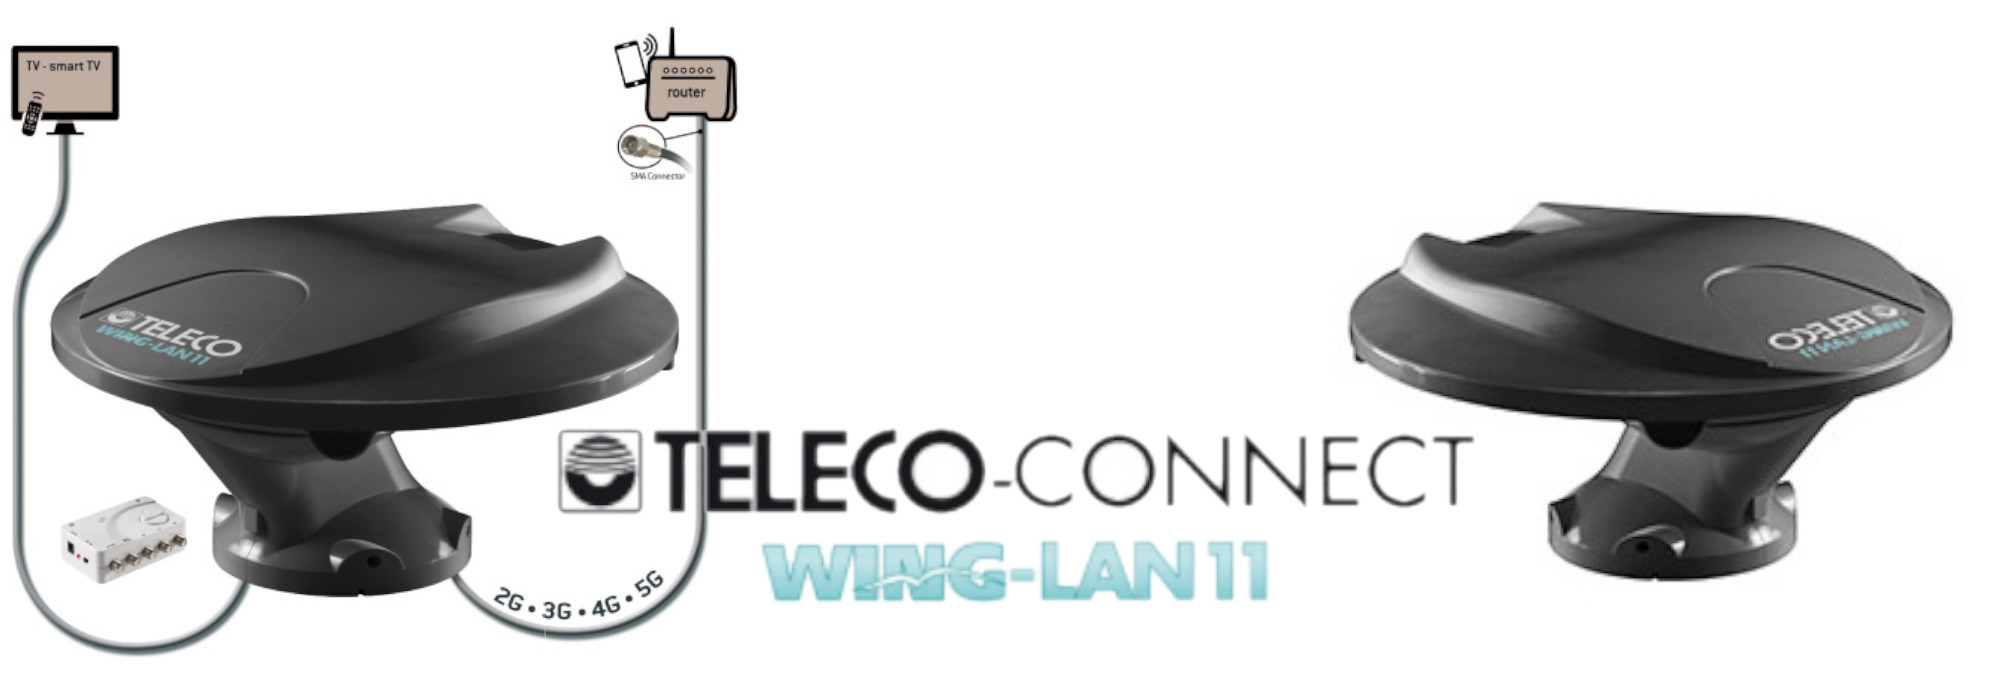 Nouvelle antenne TV & INTERNET omni-directionnelle Teleco Wing-LAN 11 : compacte, puissante et conçue pour recevoir également le signal cellulaire 5G !